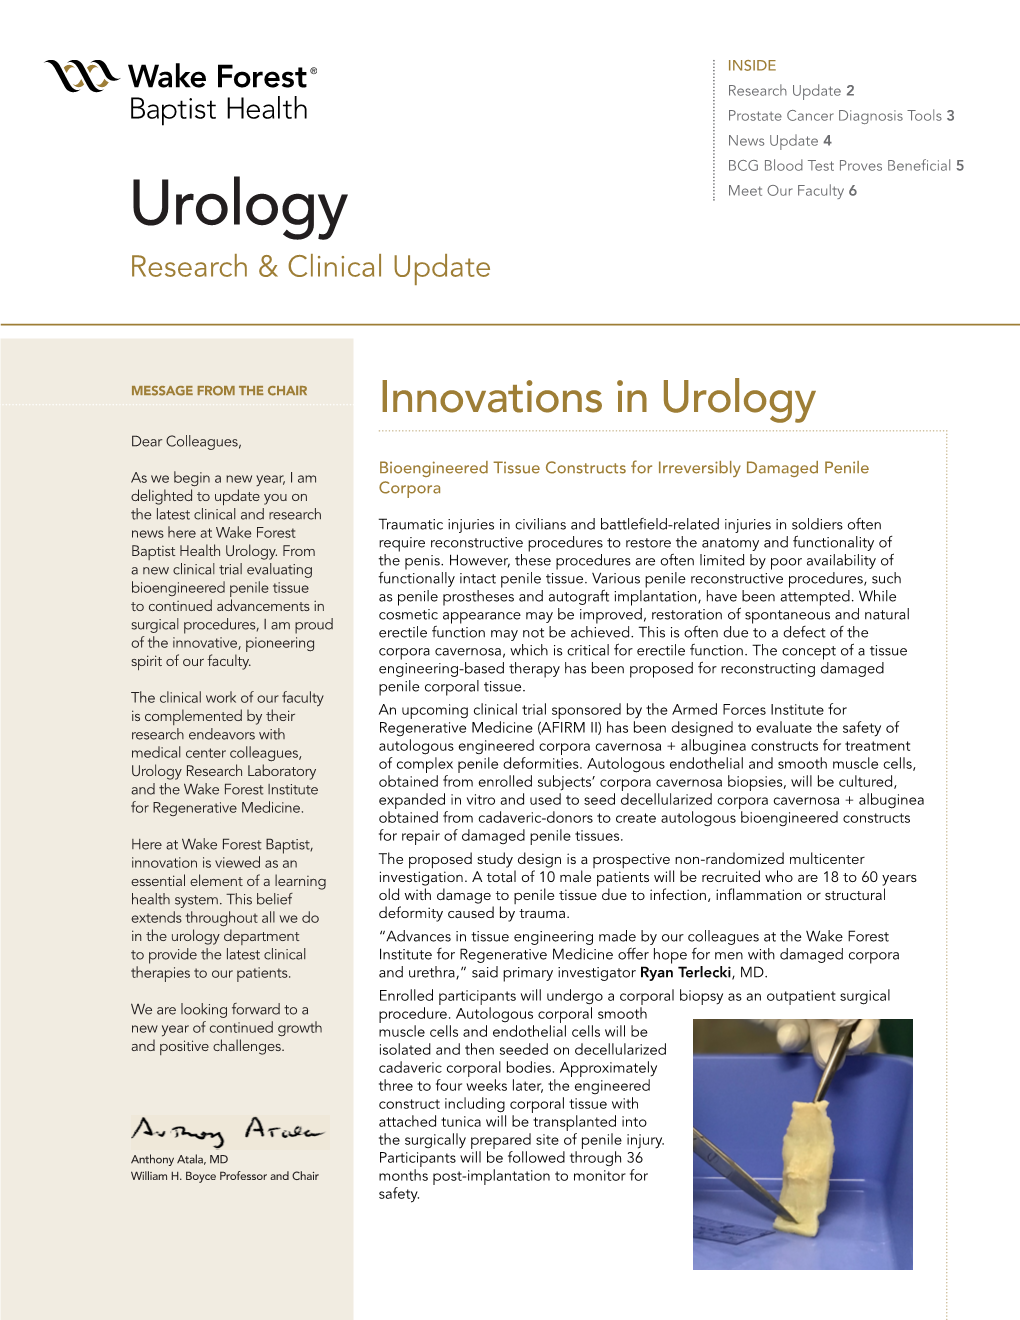 Urology Update